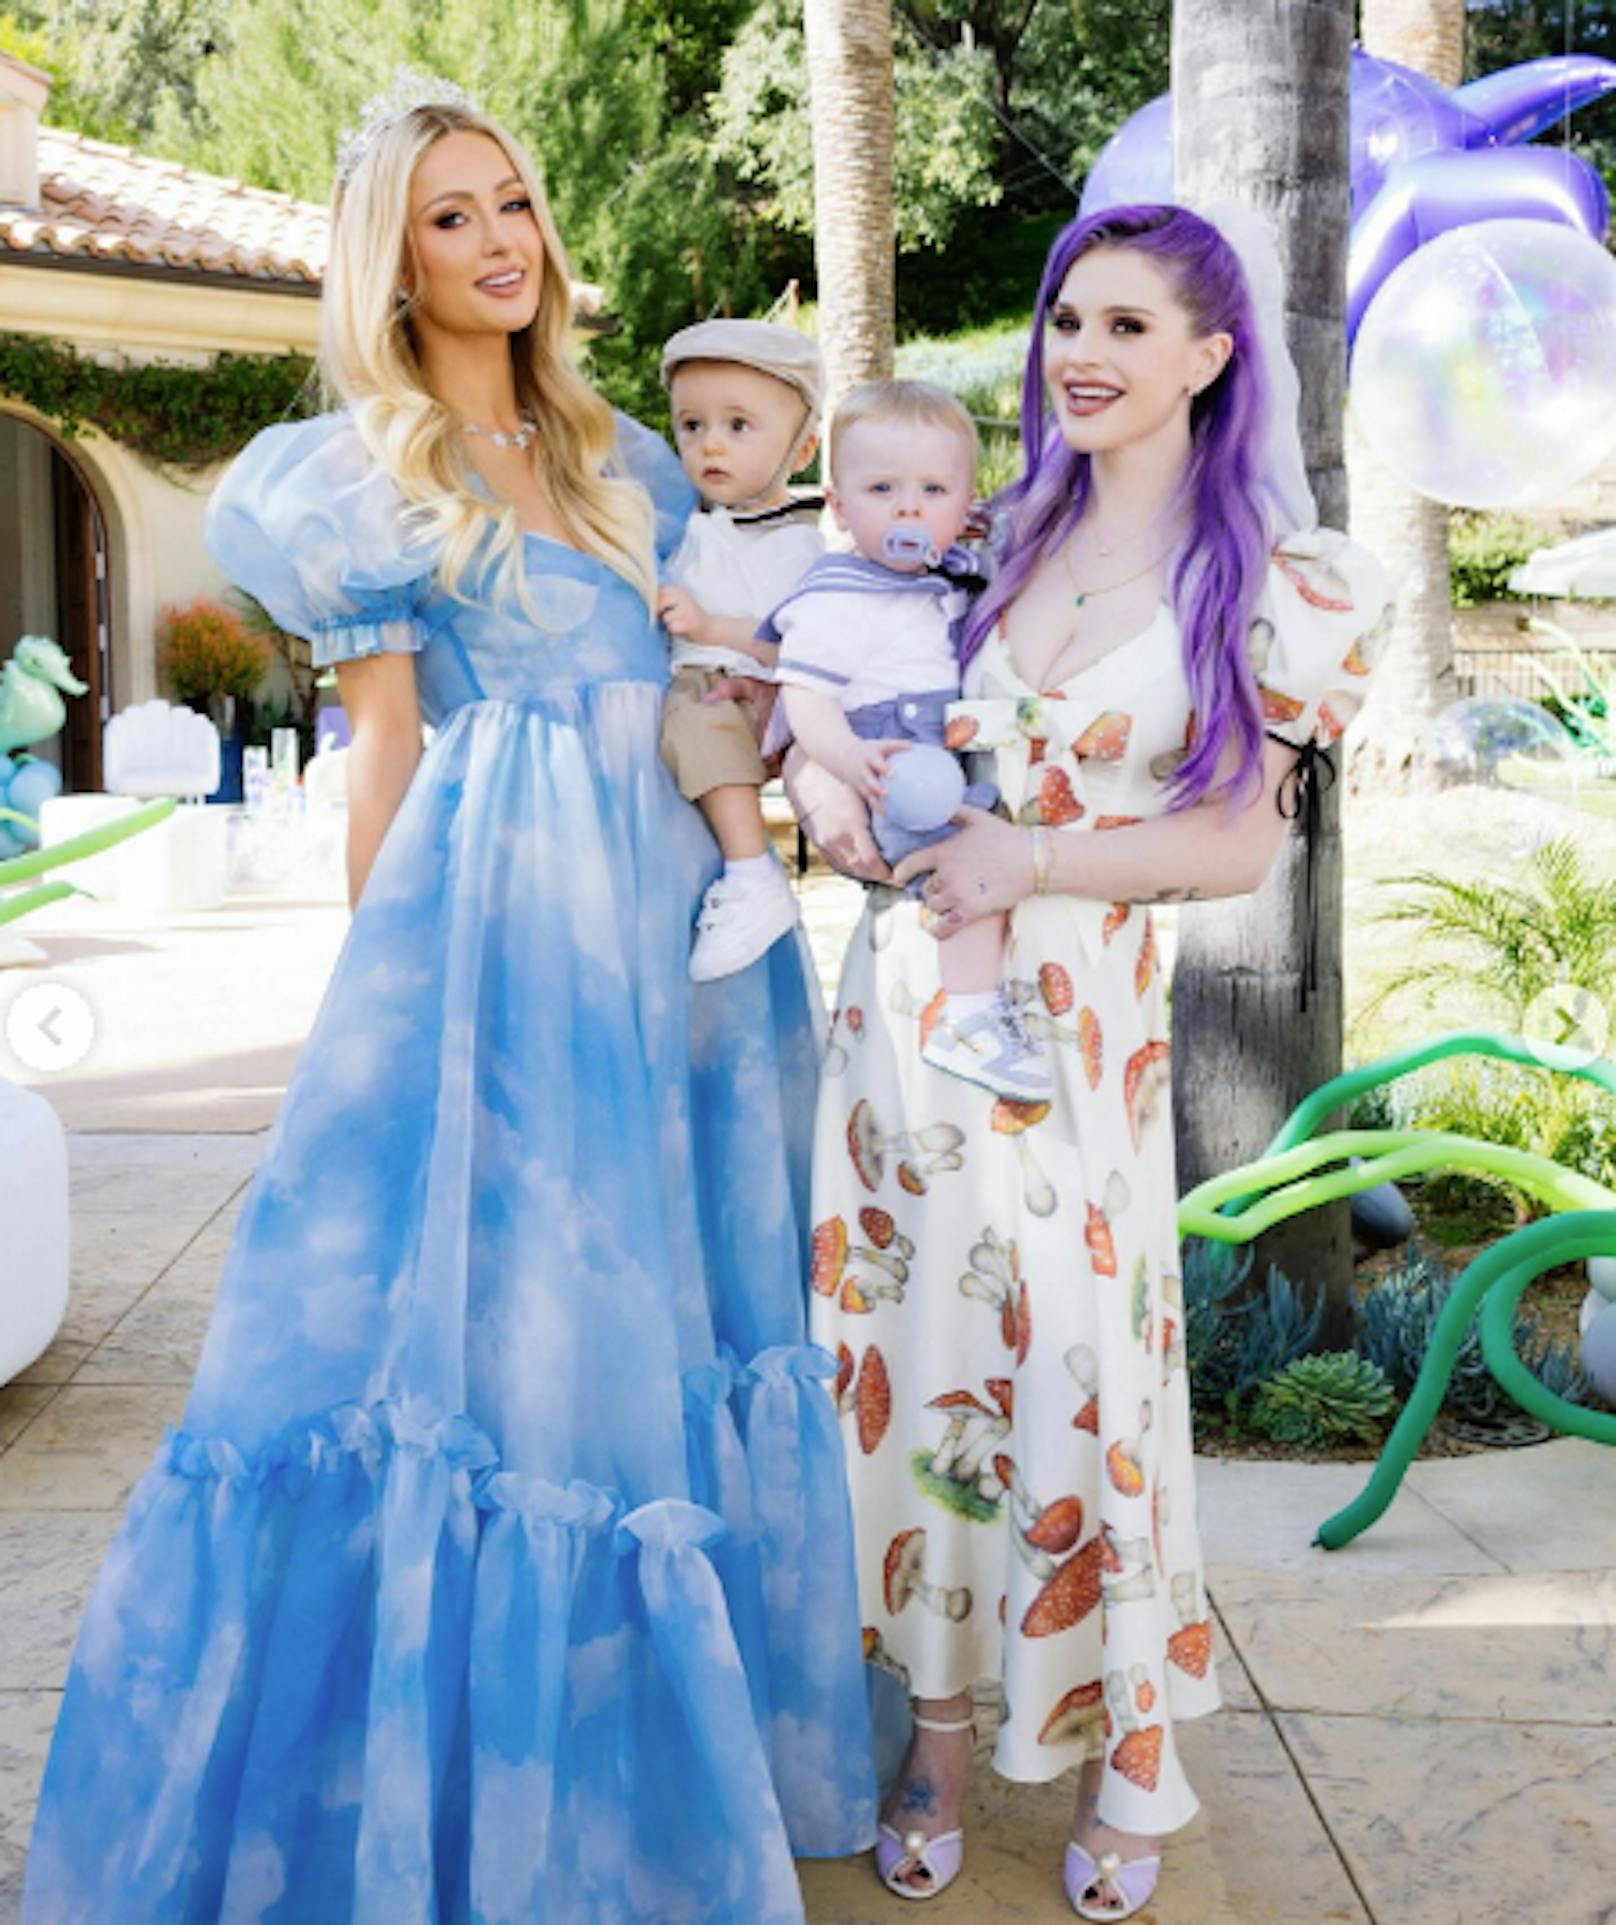 Paris Hilton feierte den ersten Geburtstag ihres Sohnes Phoenix. Kelly Osbourne war mit ihrem Sohn dabei.